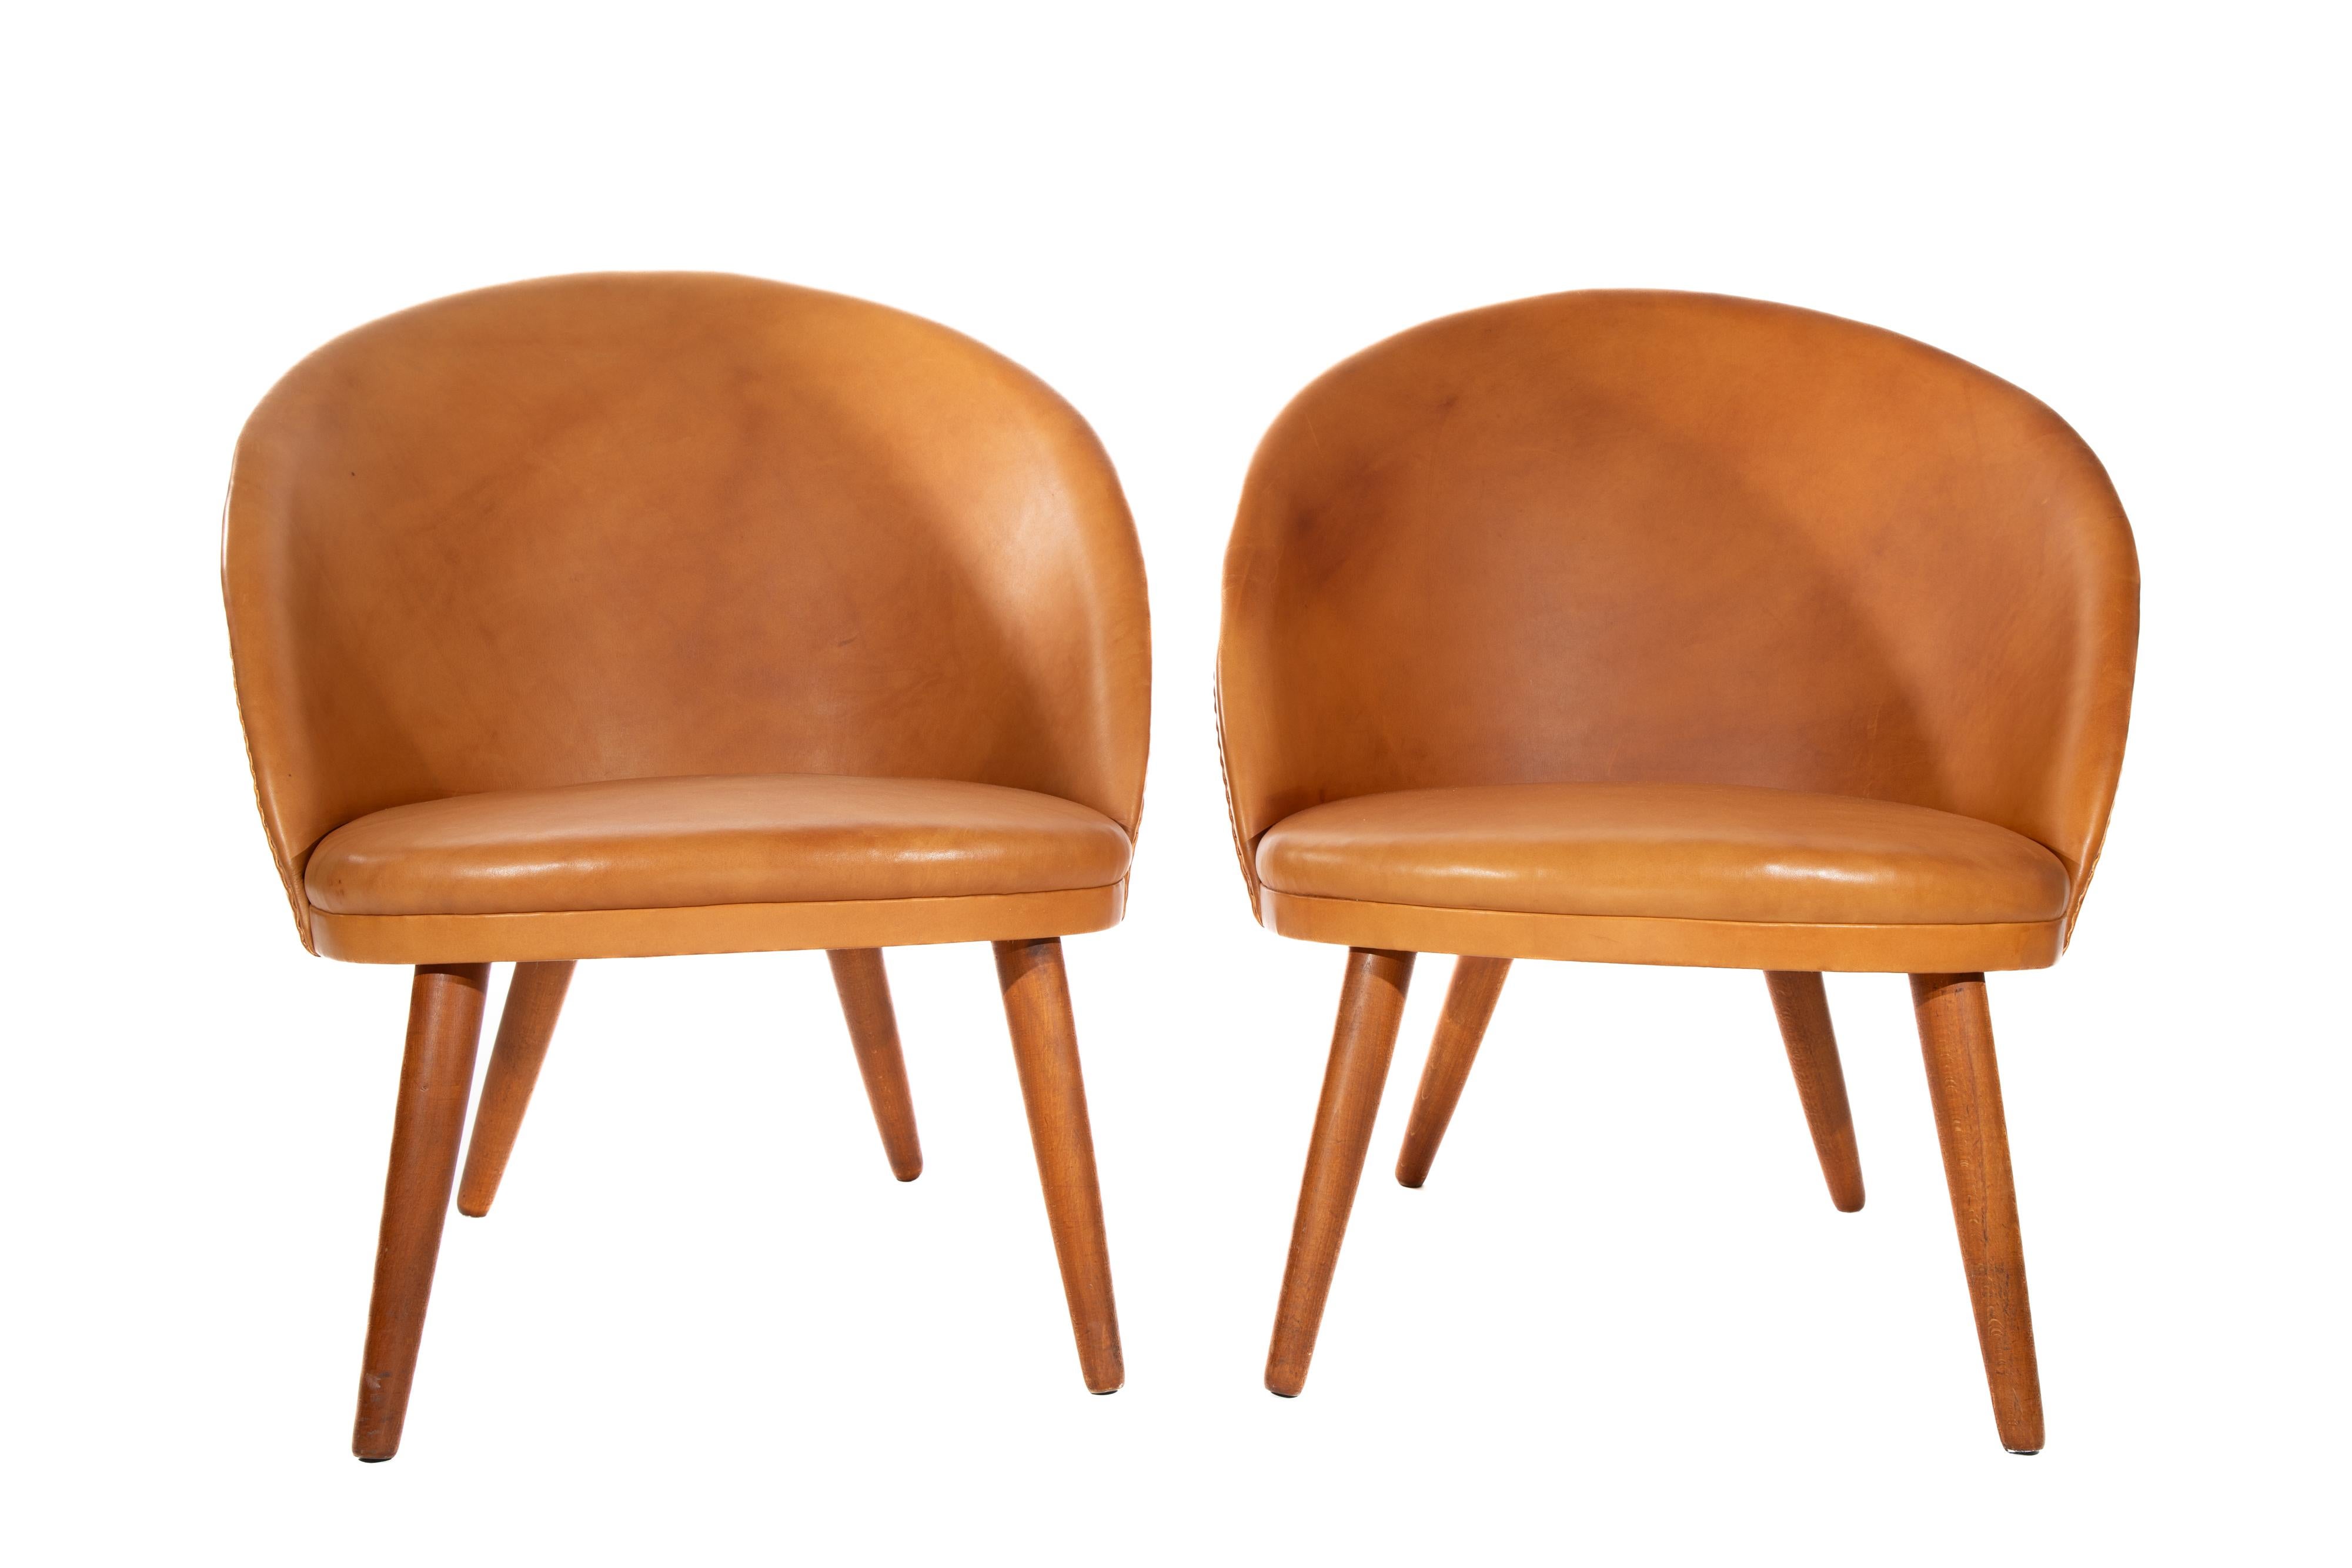 Paire de chaises longues en cuir et teck Ejvind Johannson.   Modèle 301 
Fabriqué par Godtfred H. Petersen, Danemark
C.  1950s

Sellerie plus récente avec une légère usure